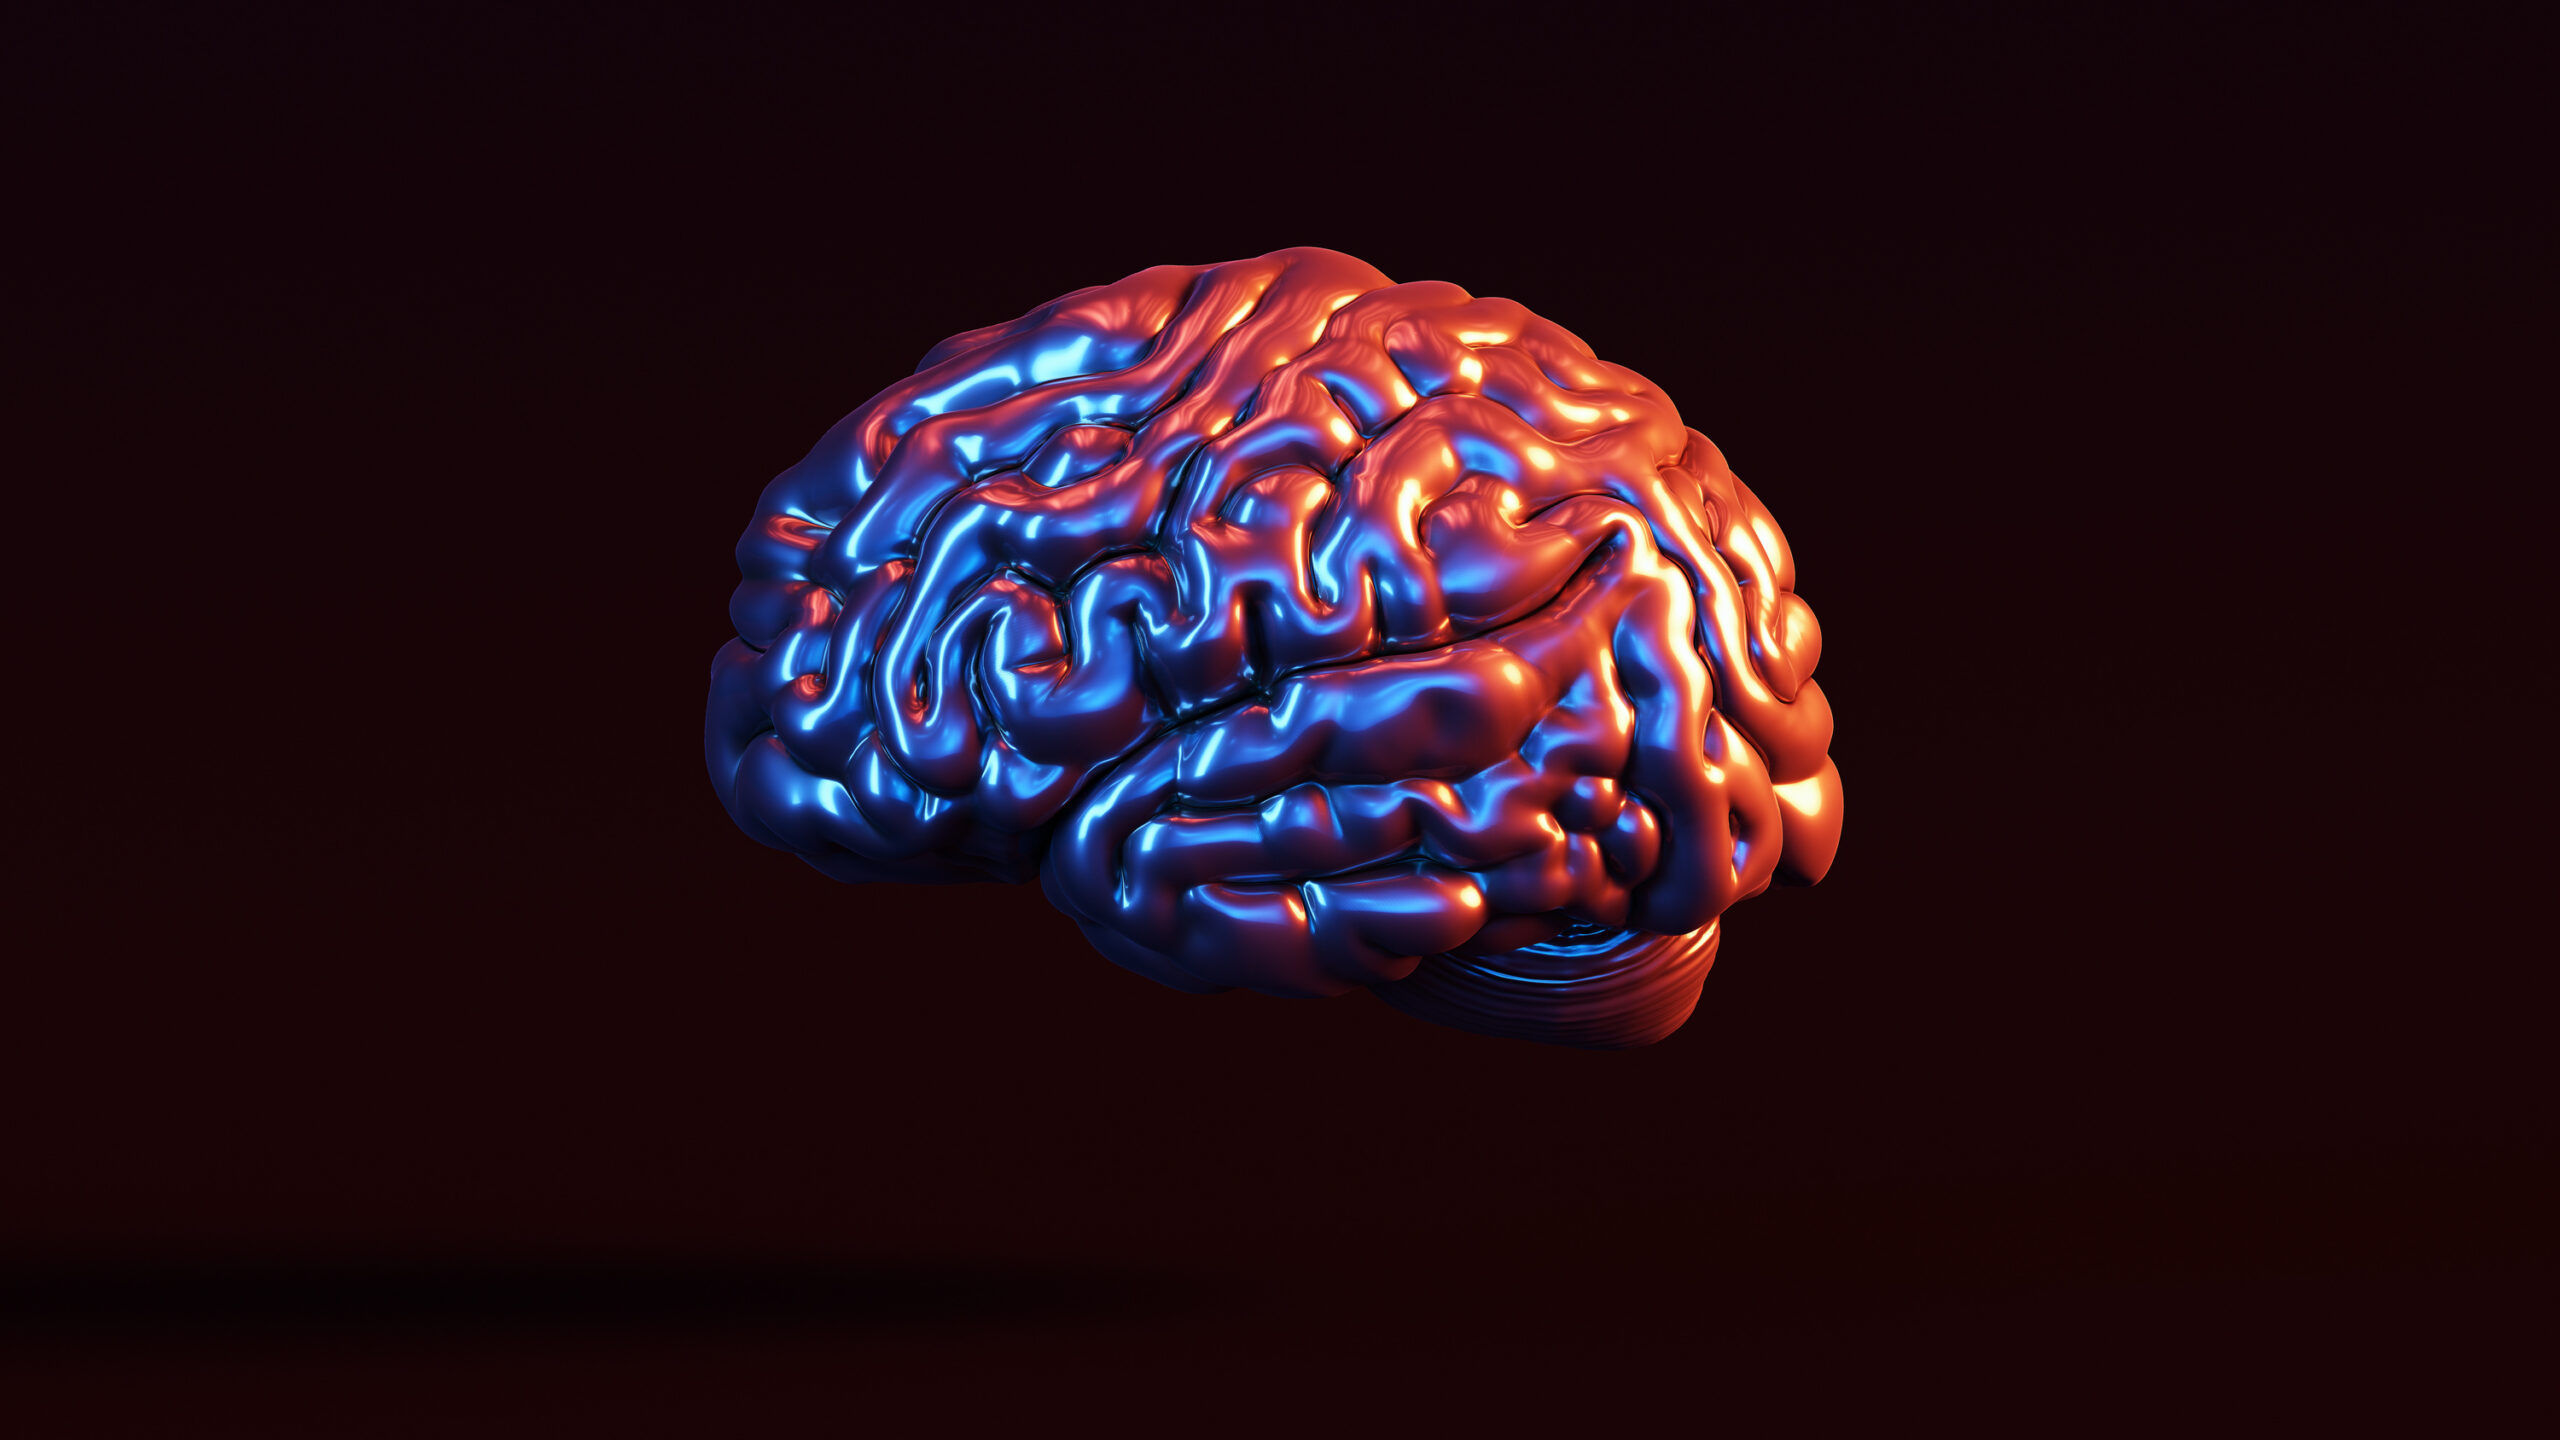 El sorprendente nuevo dato del cerebro humano: se calienta a medida que trabaja